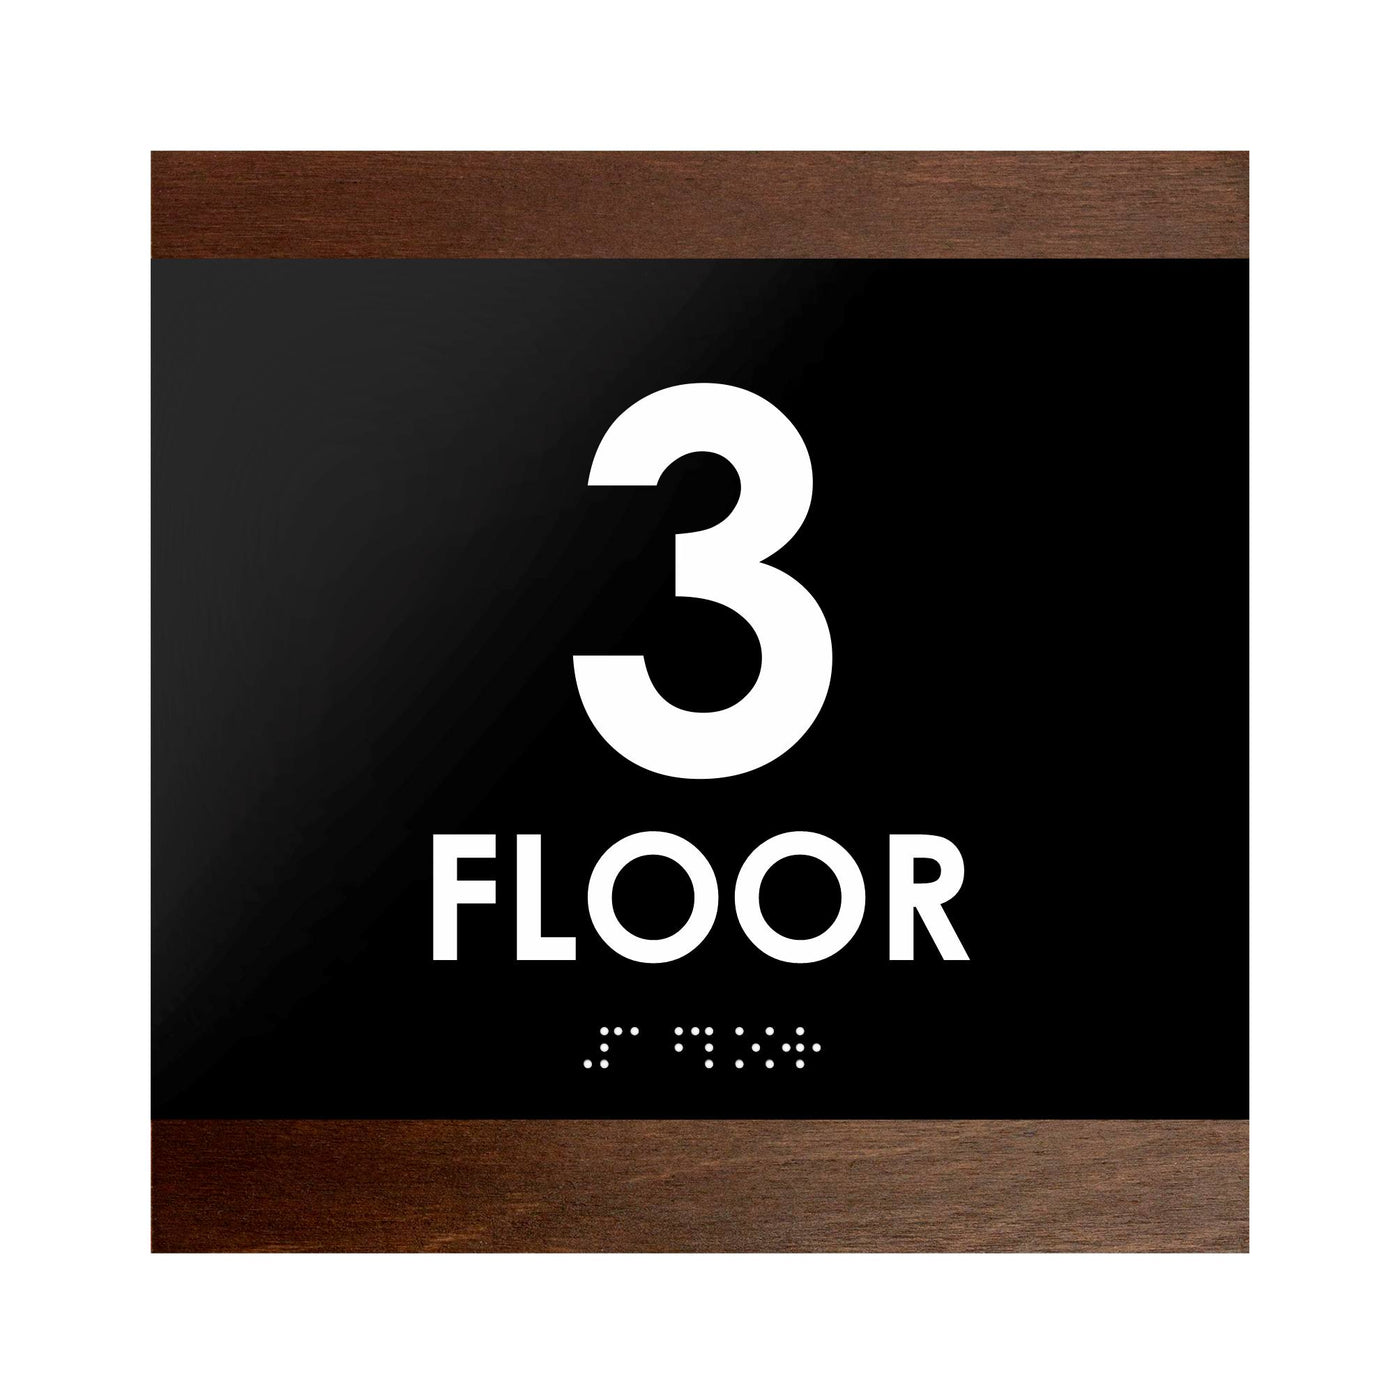 Floor Signs - 3rd Floor Sign "Buro" Design